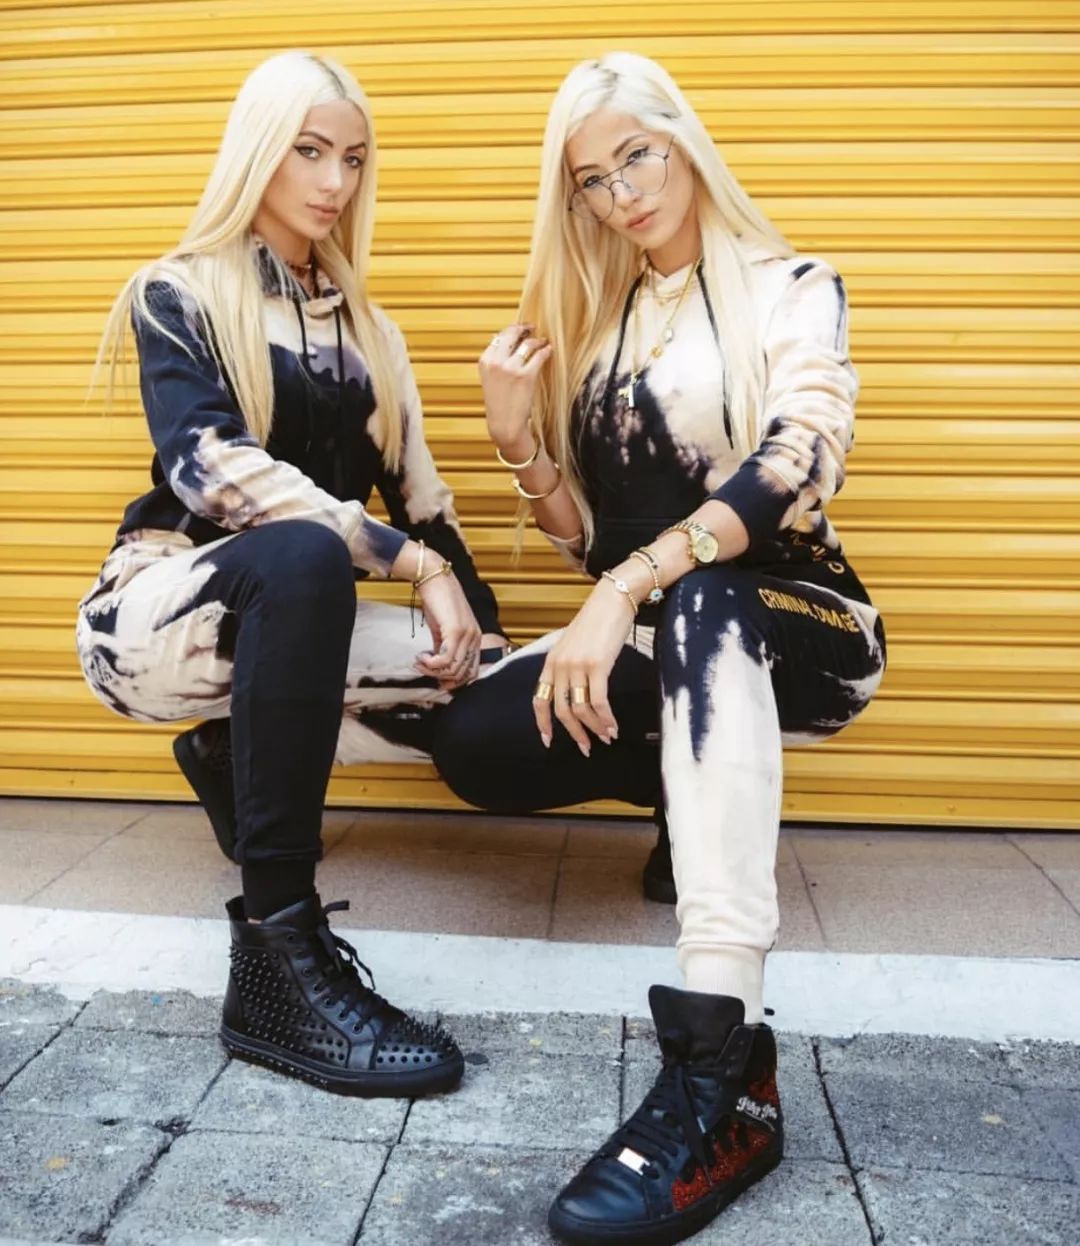 01/25|1月第三弹 全球第一女子双胞胎DJ组合-LE TWINS|开启撩拨你神经的音乐-廊坊MAX酒吧/MAX CLUB